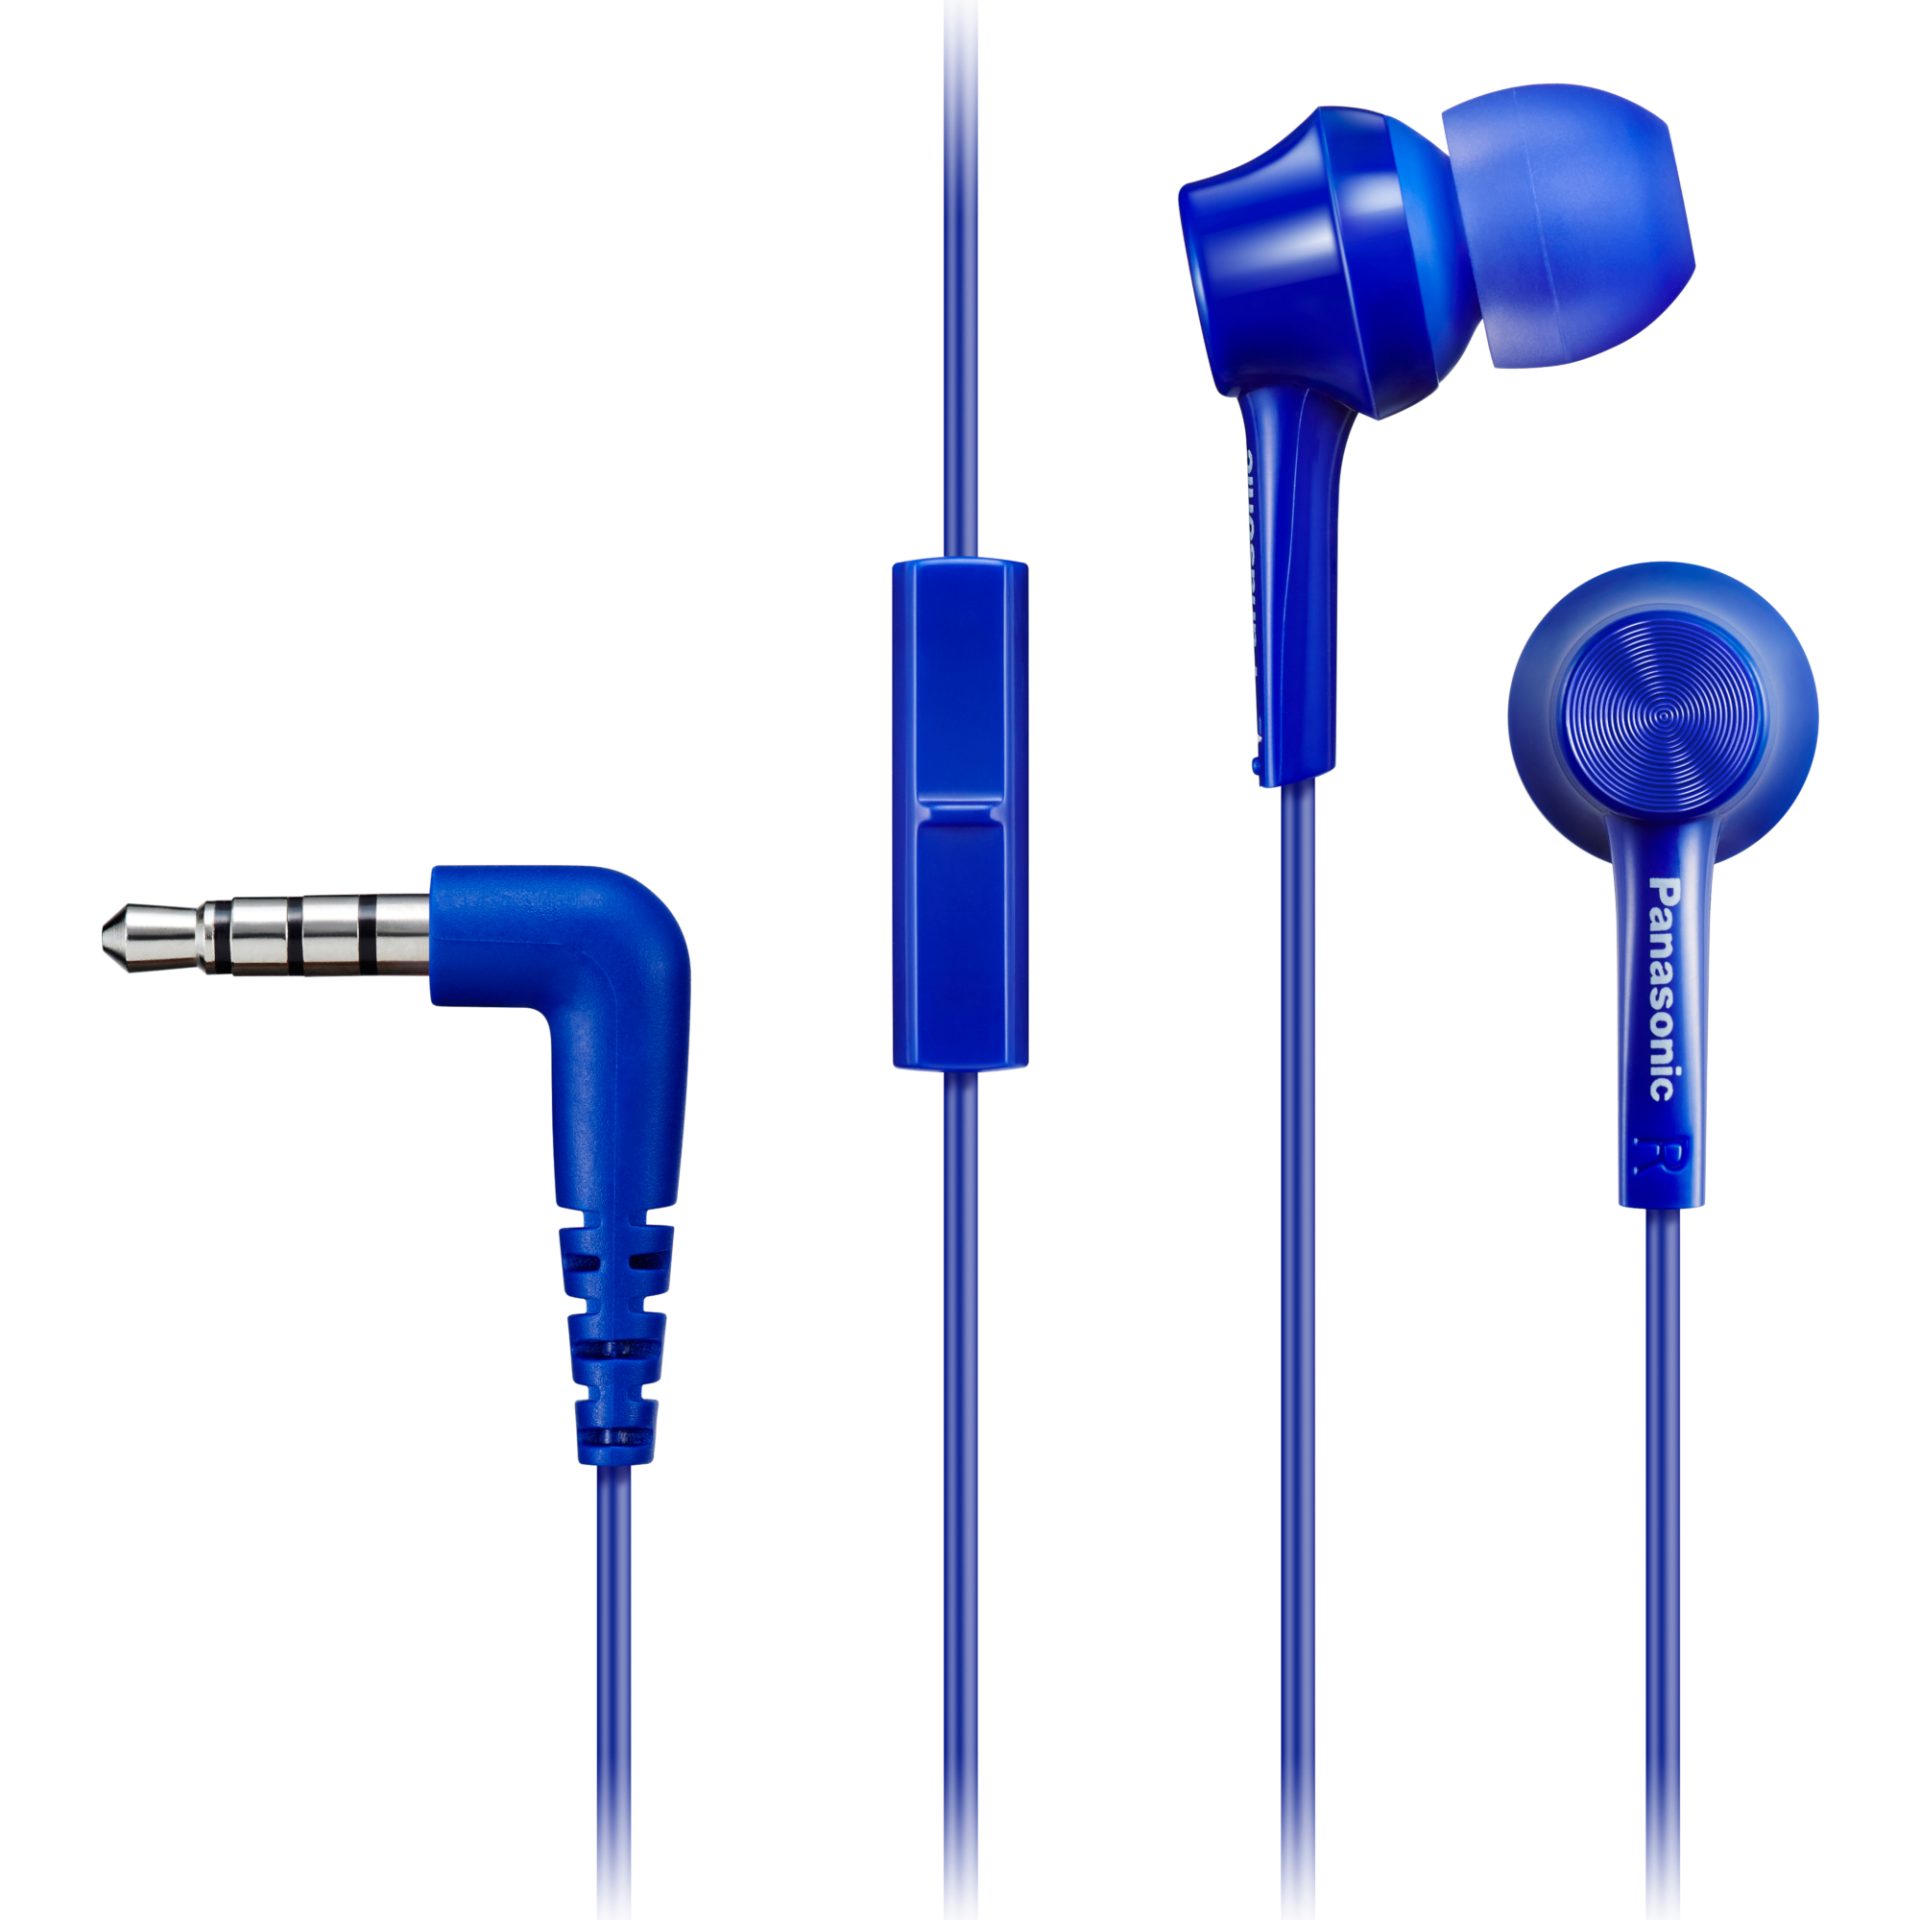 Panasonic RP-TCM115 ergonomická sluchátka do uší (9mm měniče, výkonné basy, mikrofon a dálkové ovládání v kabelu, kabel 1,2m, pohodlné nošení), modrá